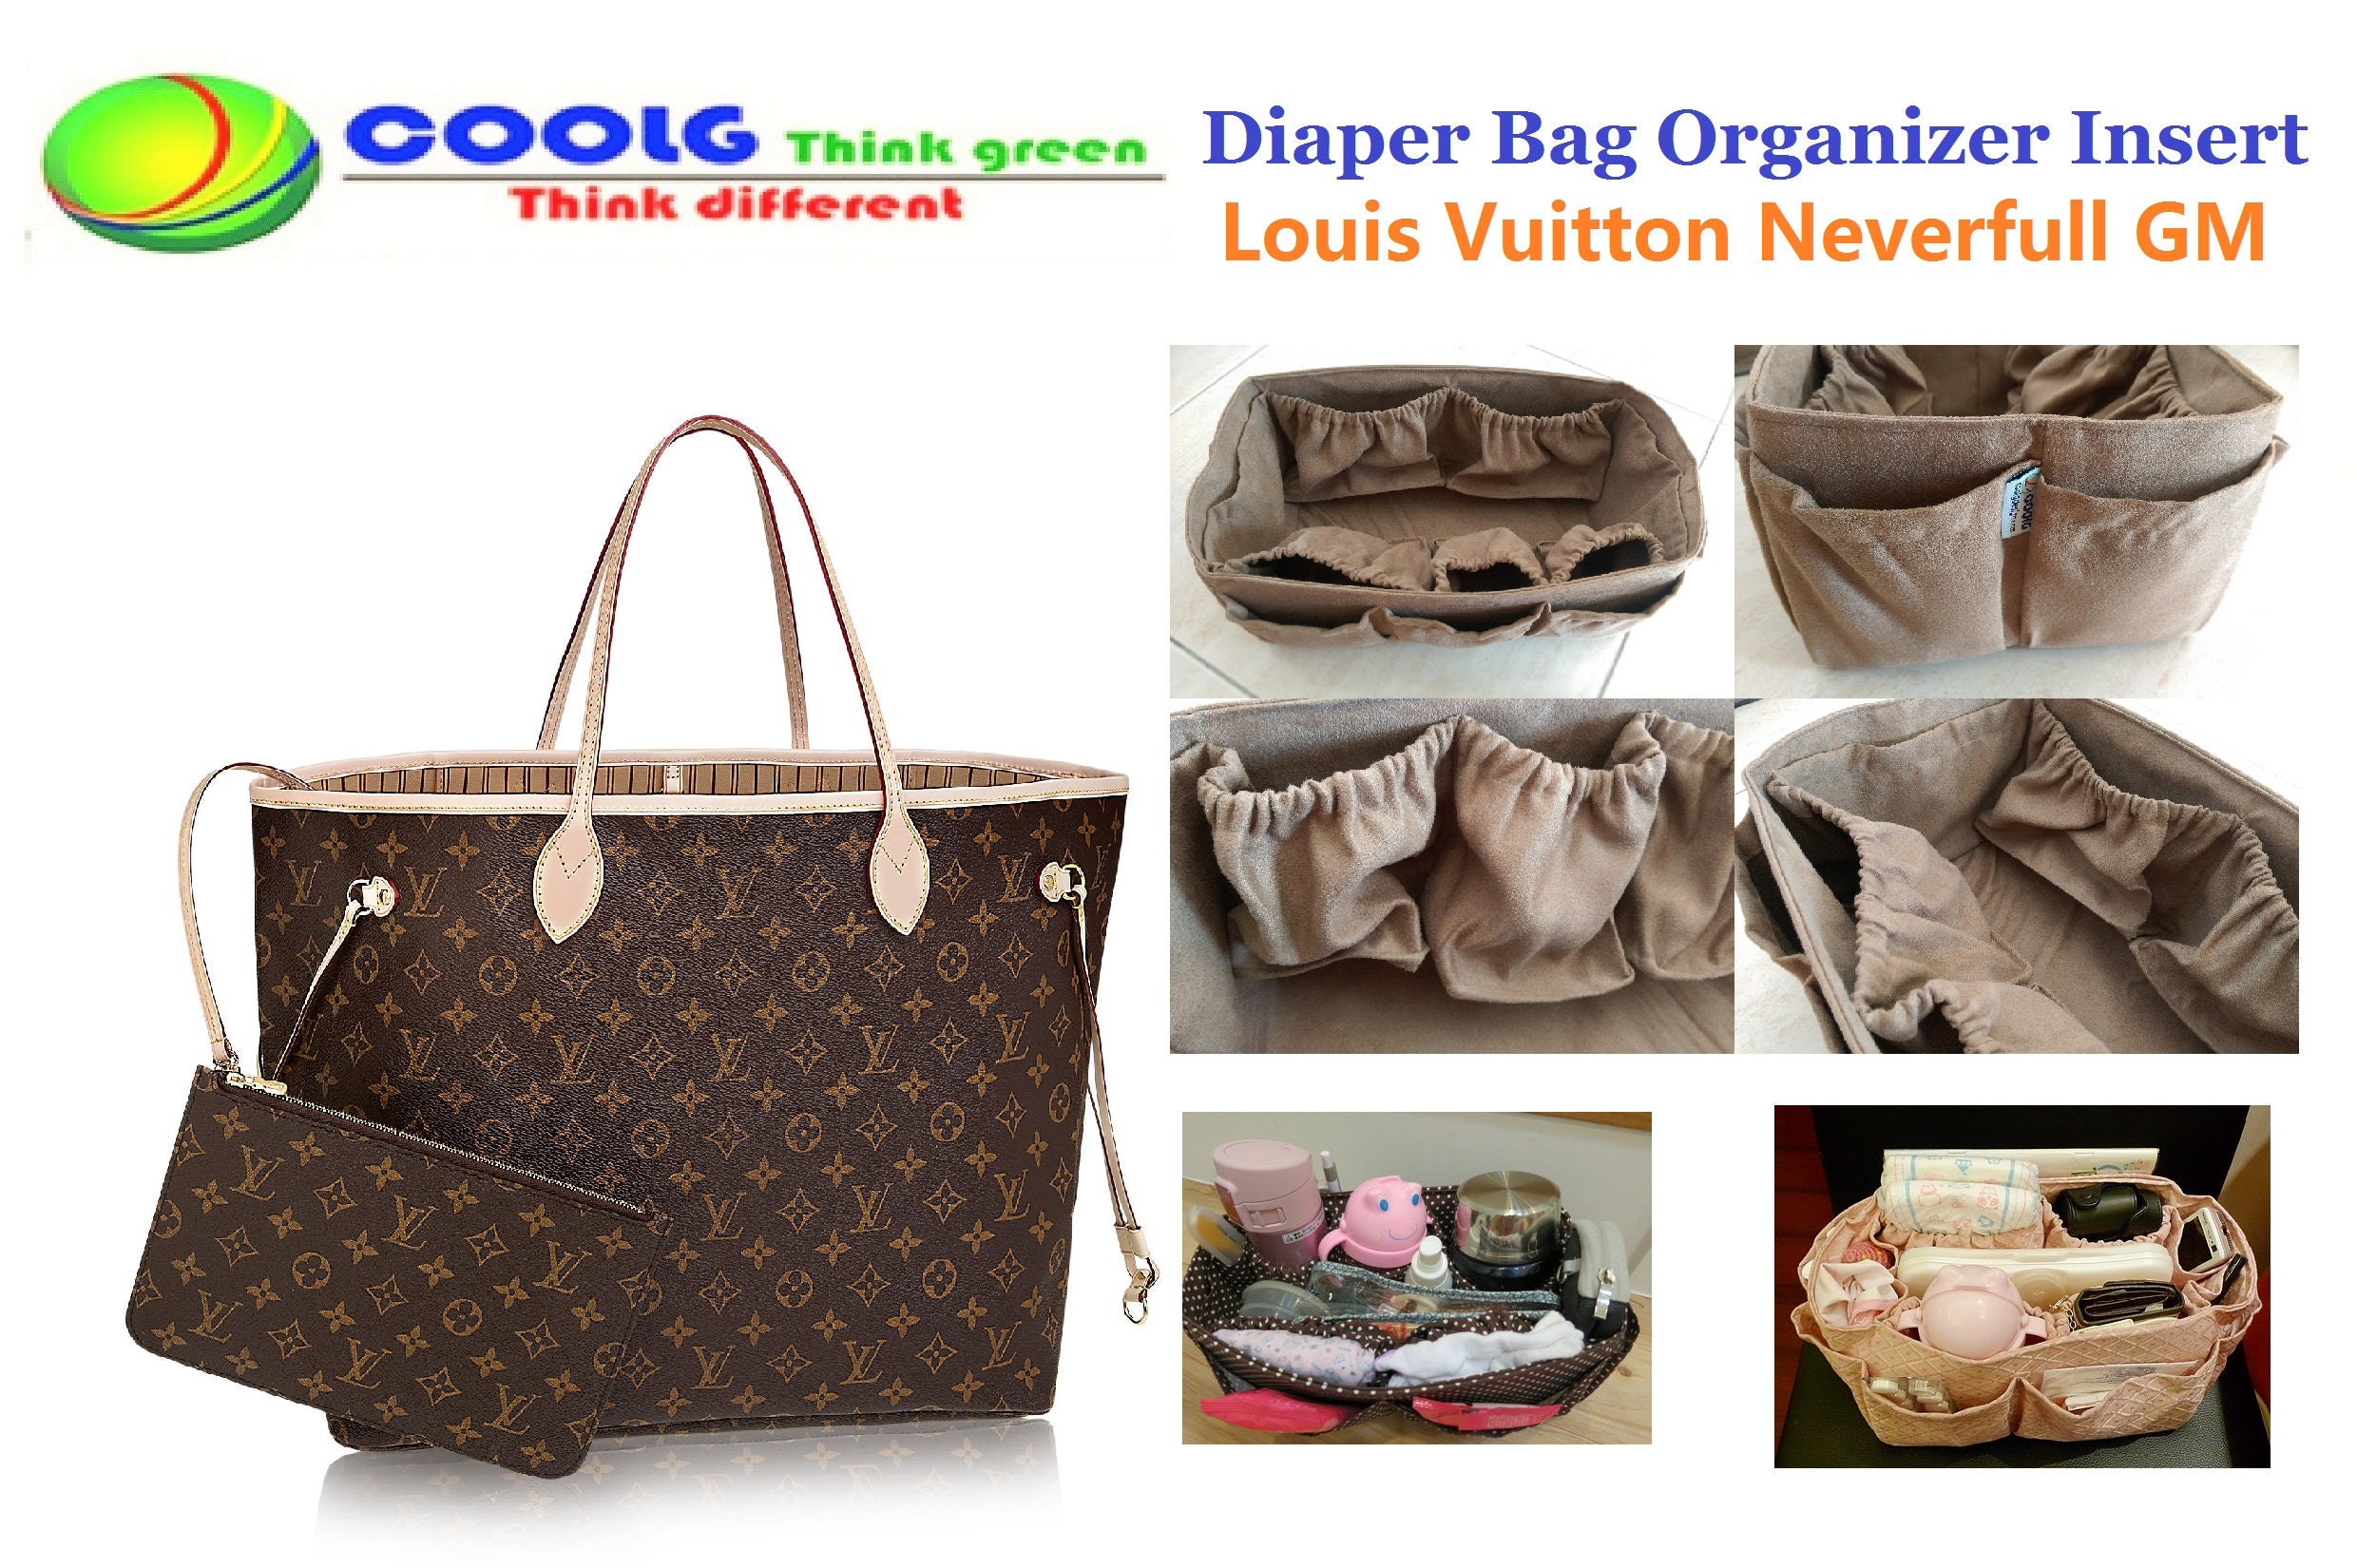 Diaper Bag Organizer Insert For LV Neverfull GM 30x17cm totes